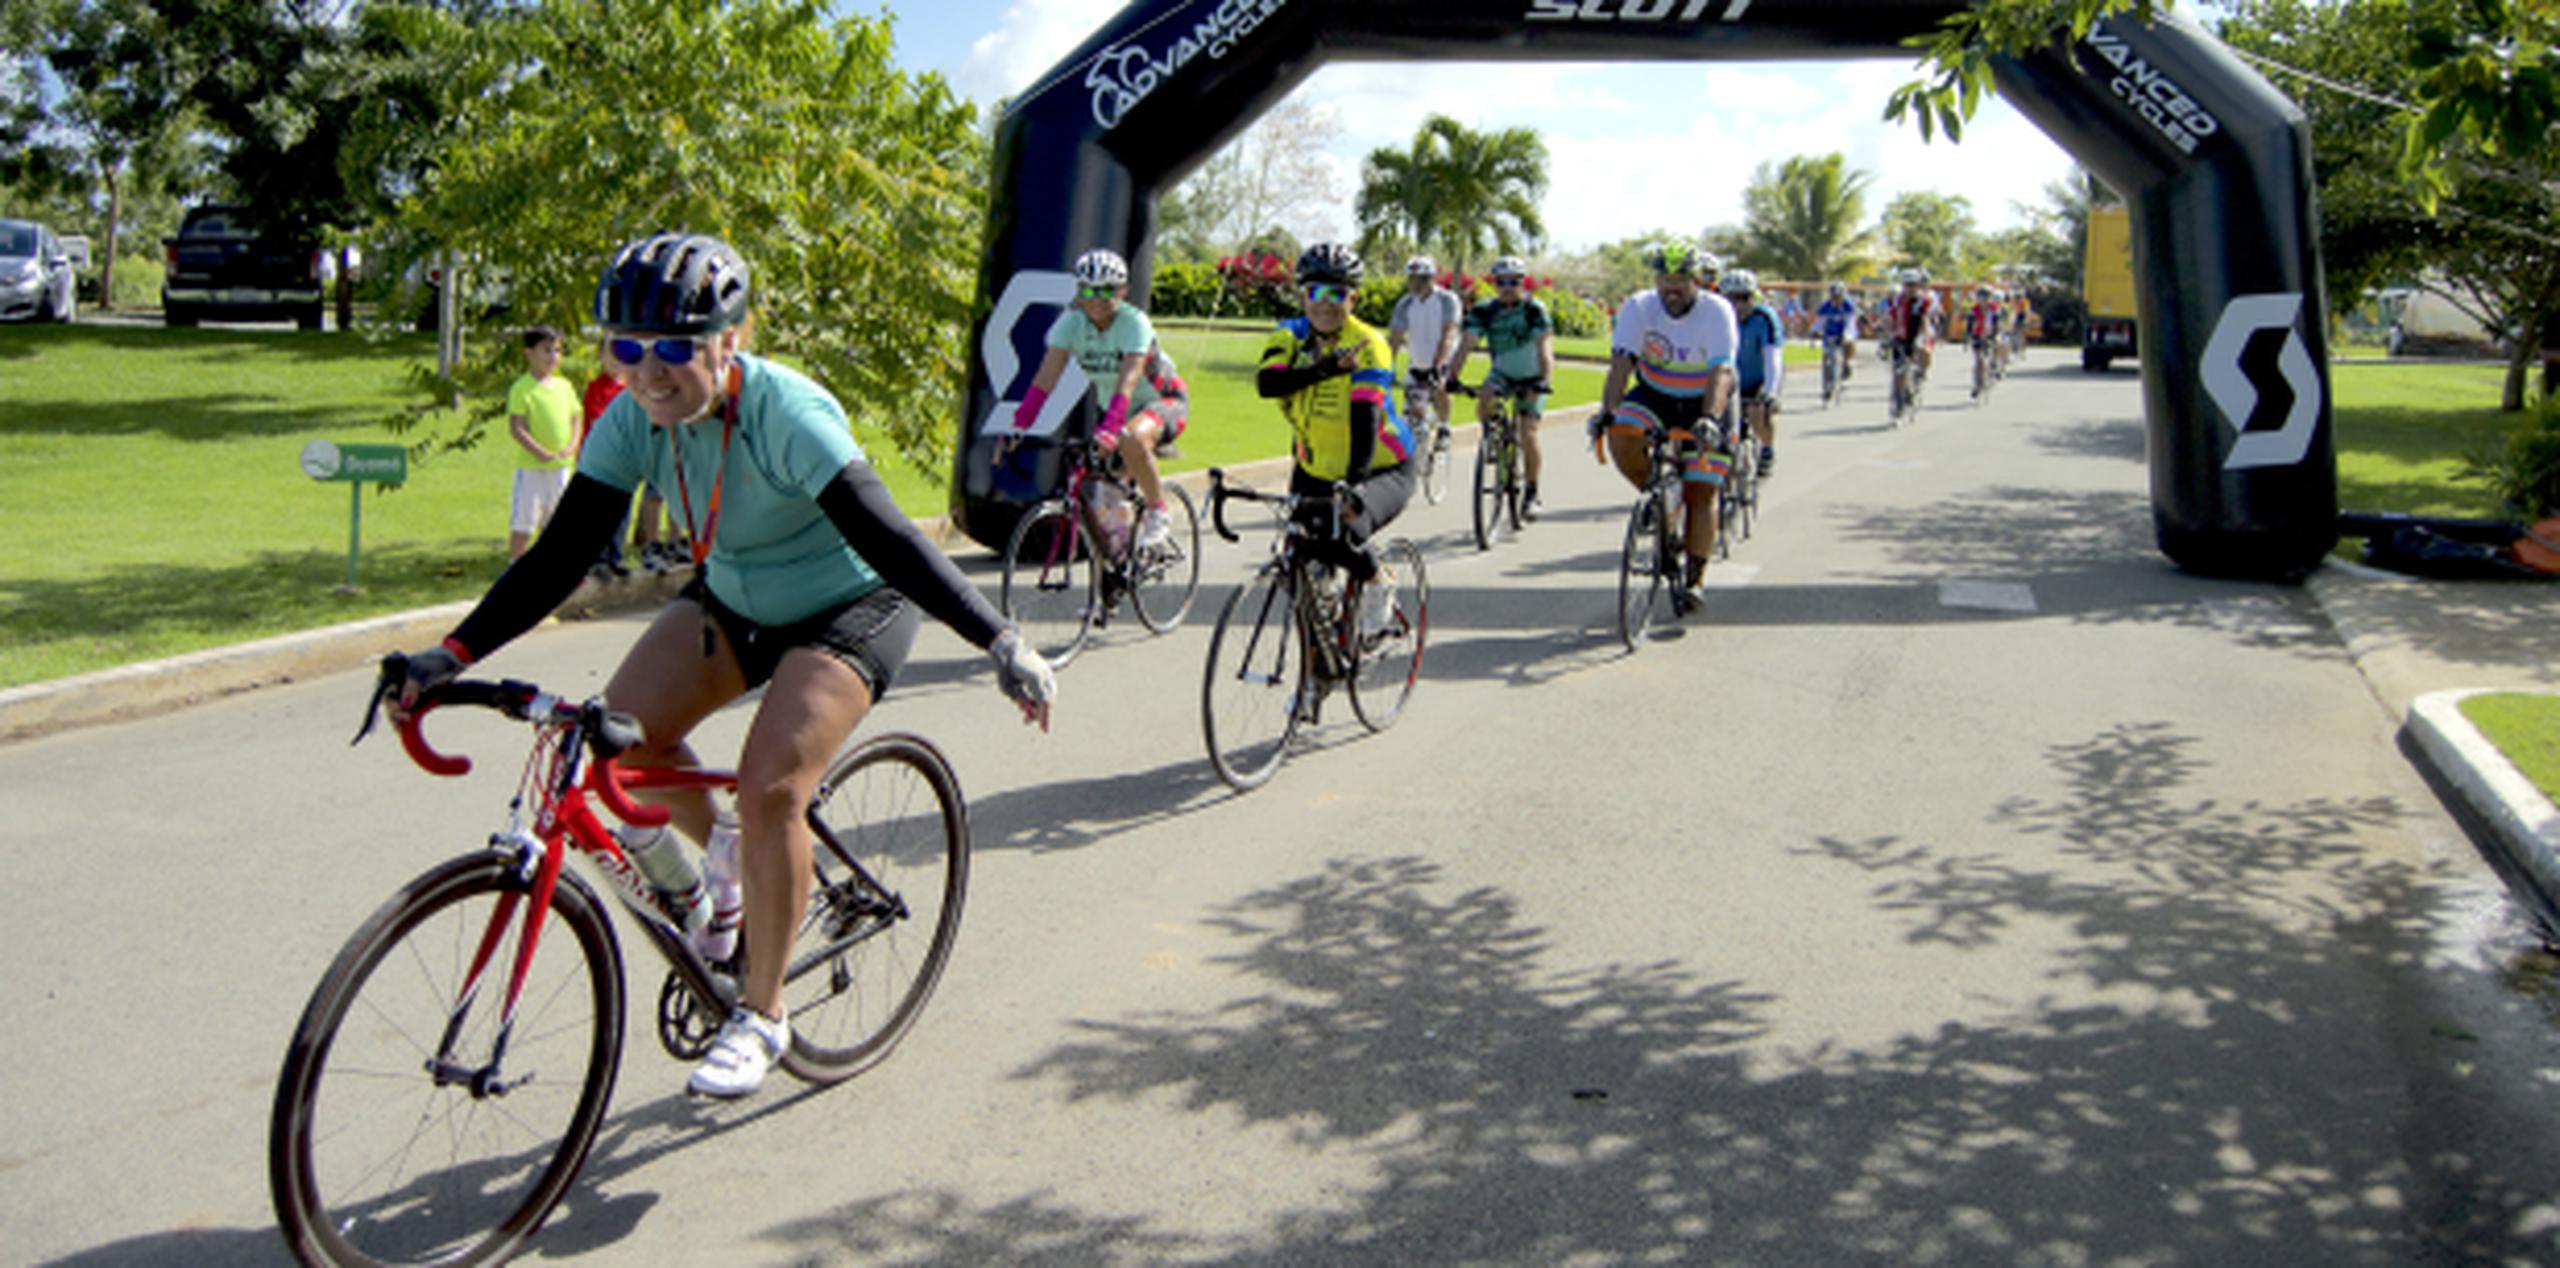 Durante la actividad, los ciclistas llegan hasta el Gran Parque Ecoturístico, Ecológico y Recreativo, El Dorado, y ofrecen un juguete para participar. (Suministrada)